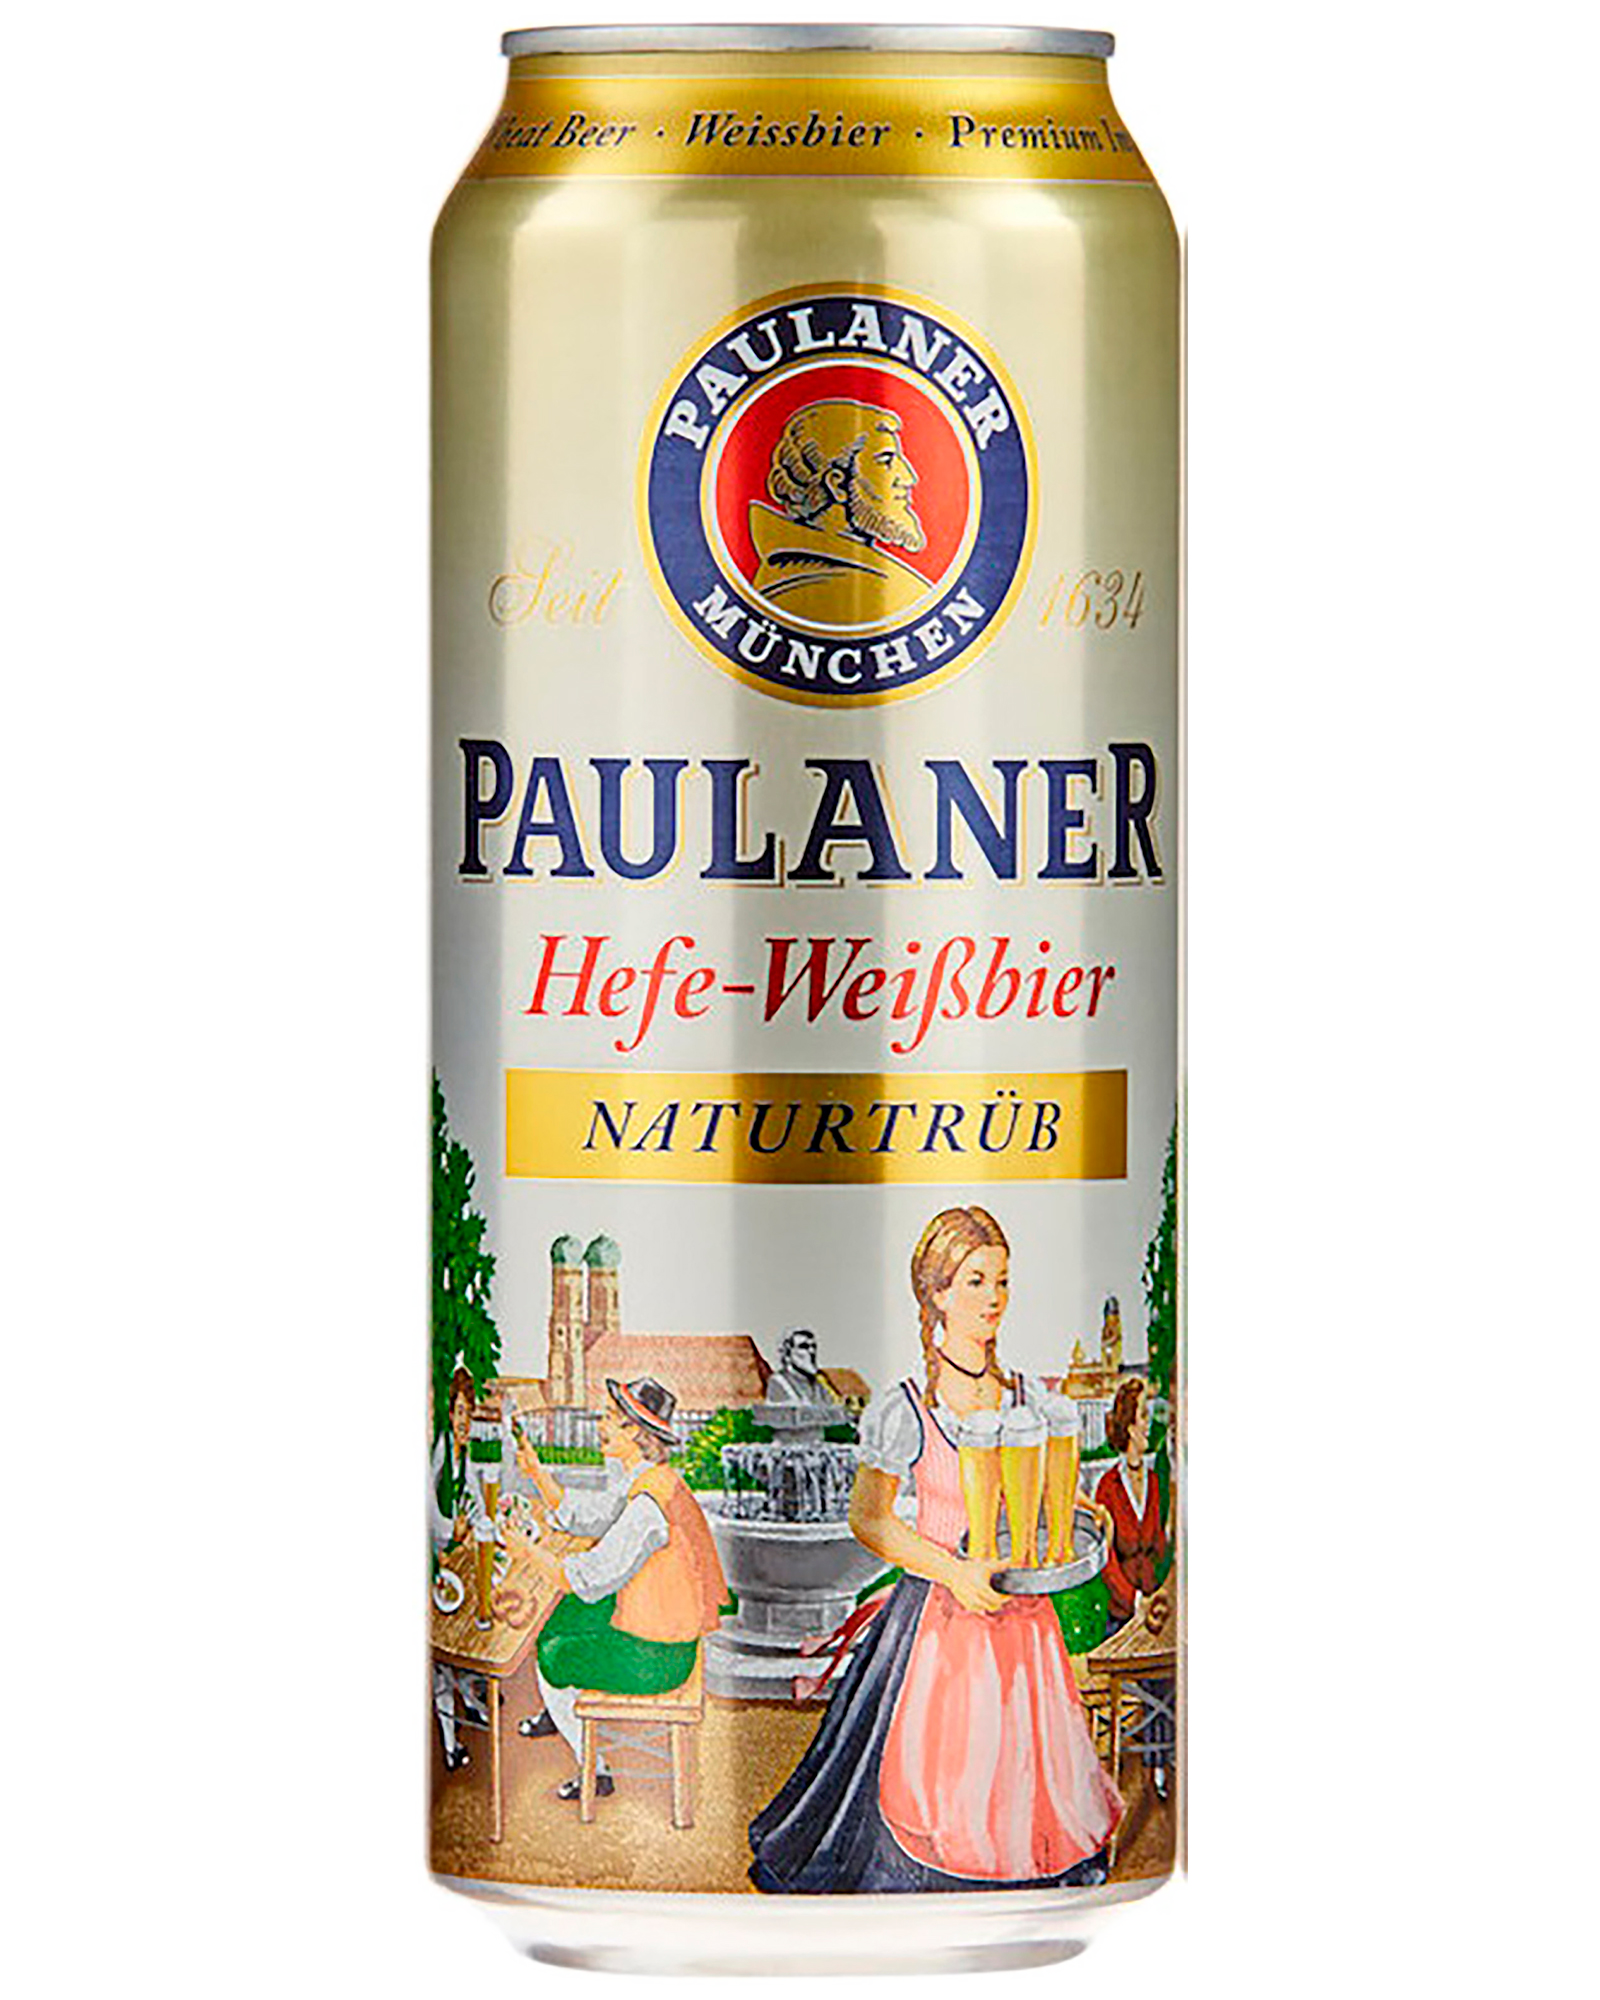 Paulaner Hefe-Weissbier can